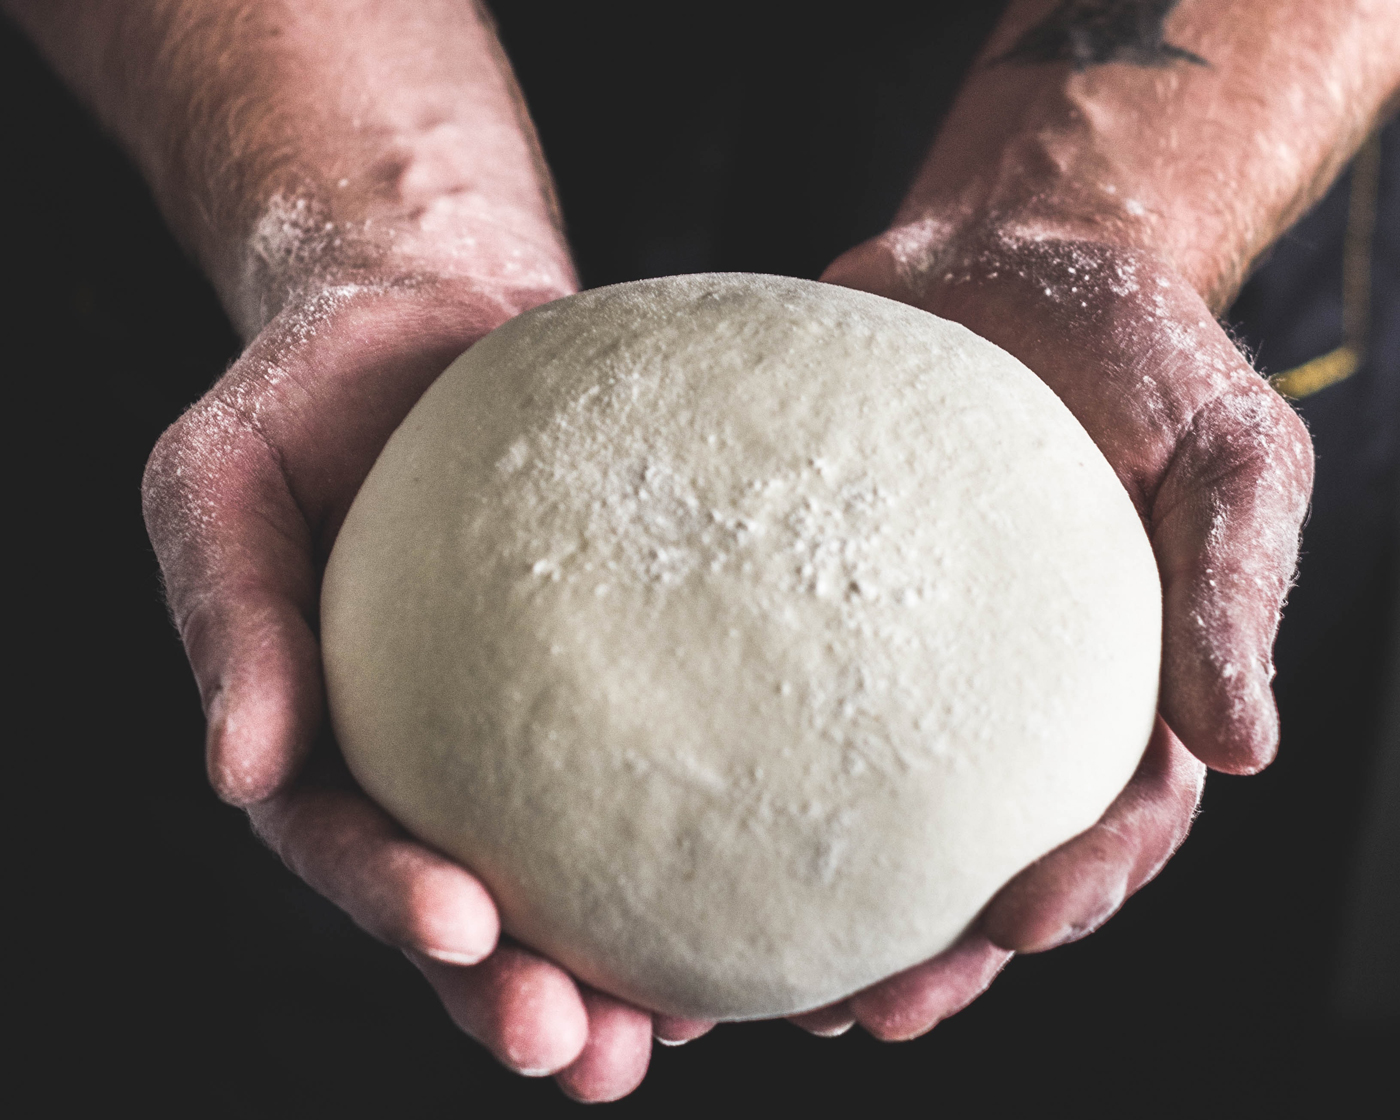 Hands holding a ball of fresh dough.